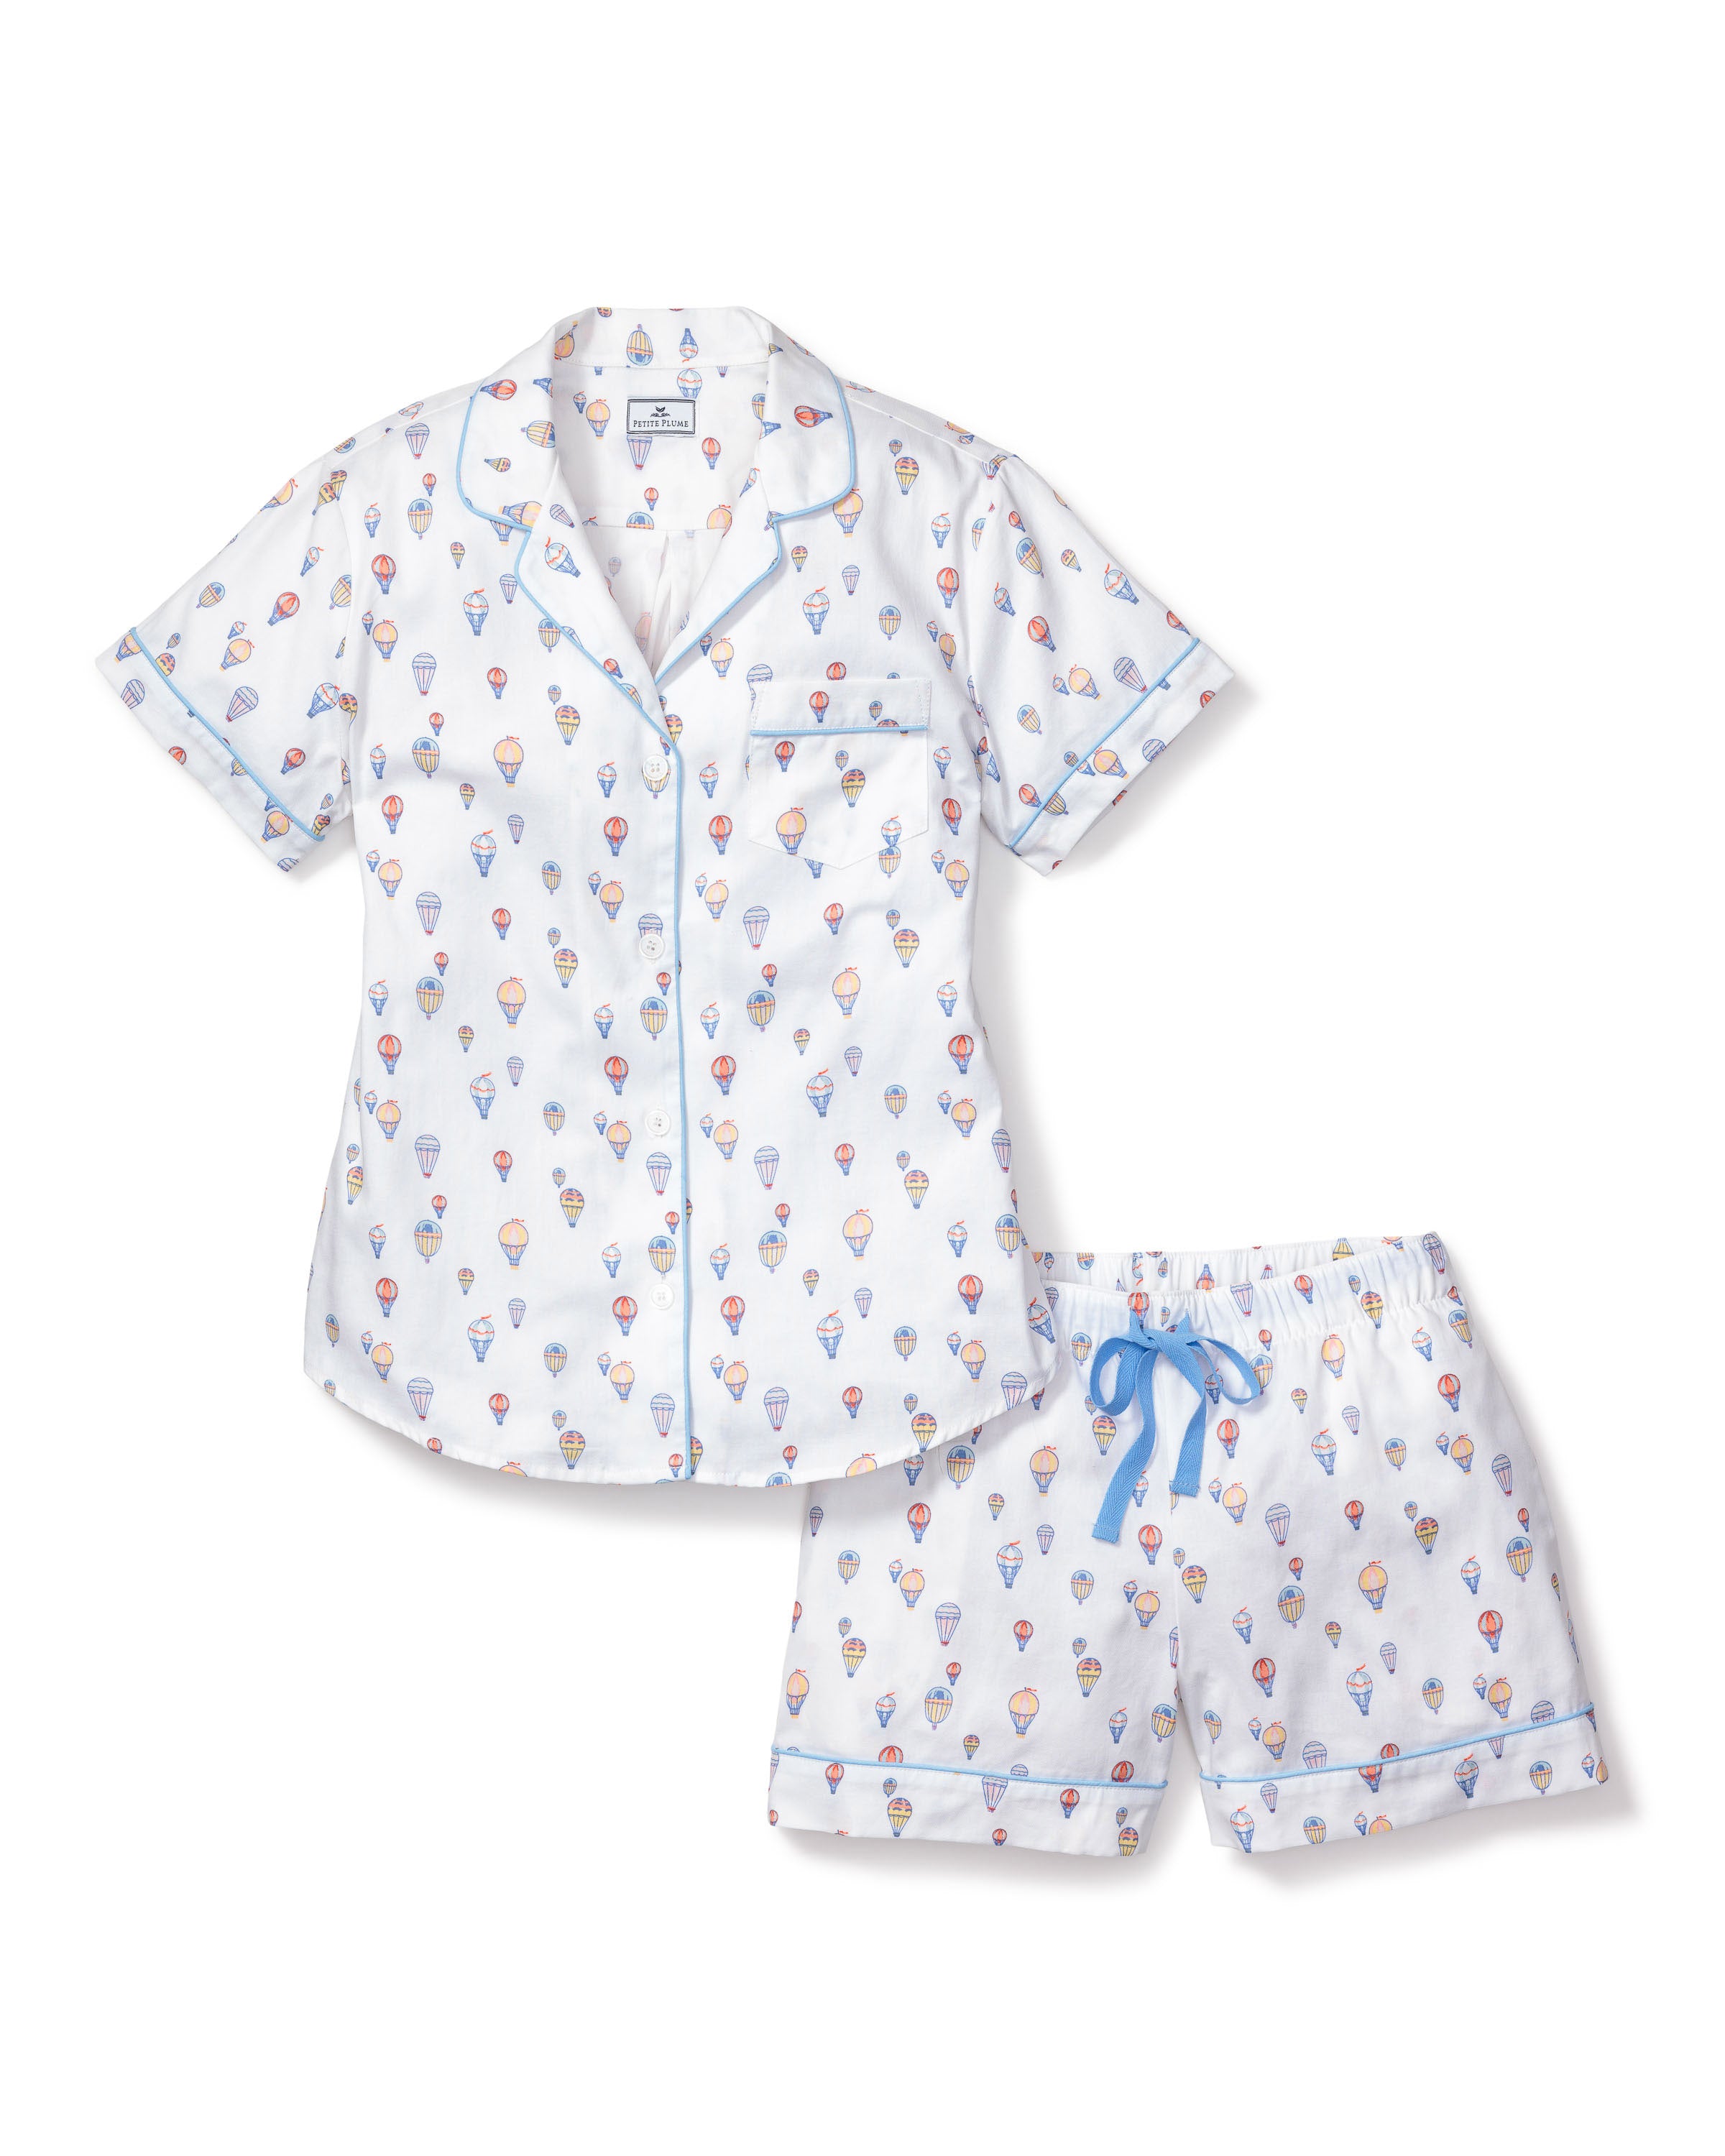 Women's Pajama Short Sleeve Short Set in Bon Voyage – Petite Plume